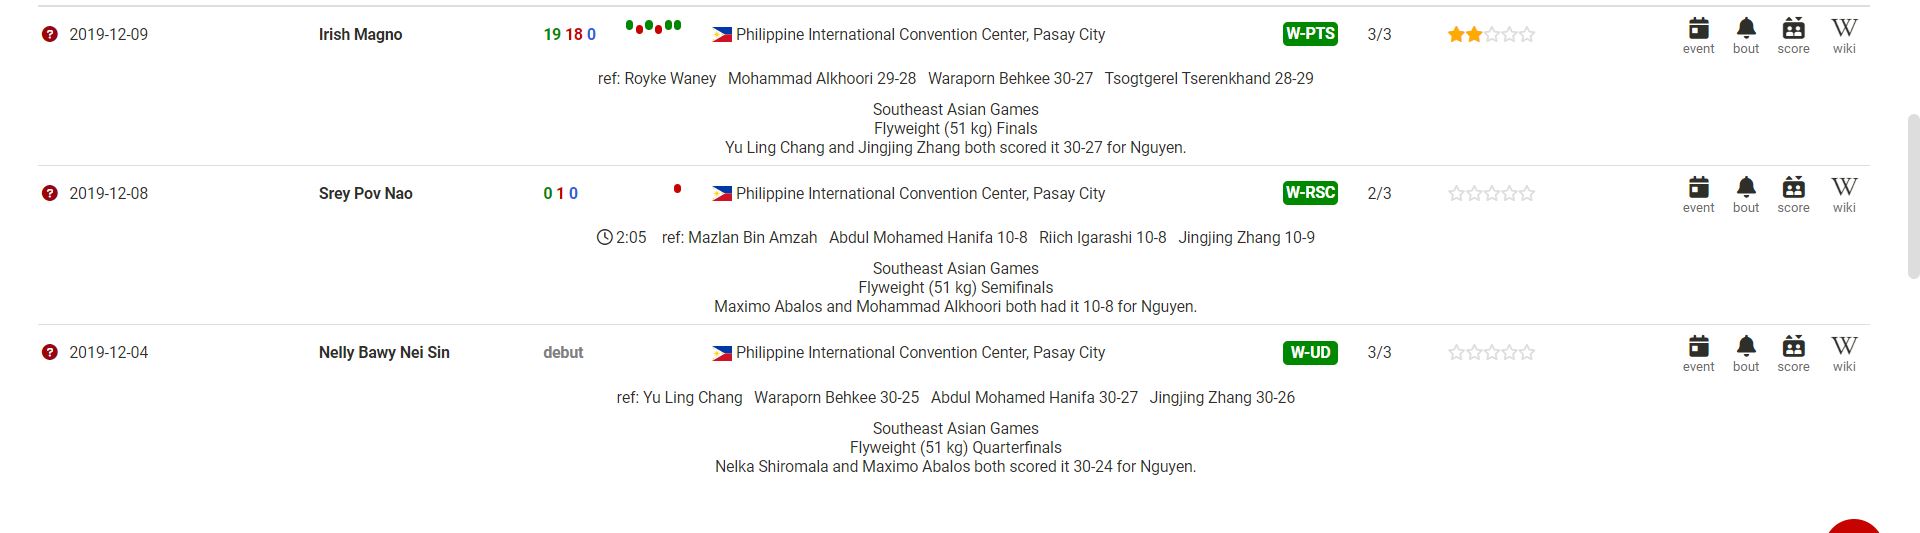 Các trận đấu Boxing SEA Games 31 không được ghi nhận kết quả trên BoxRec - Ảnh 4